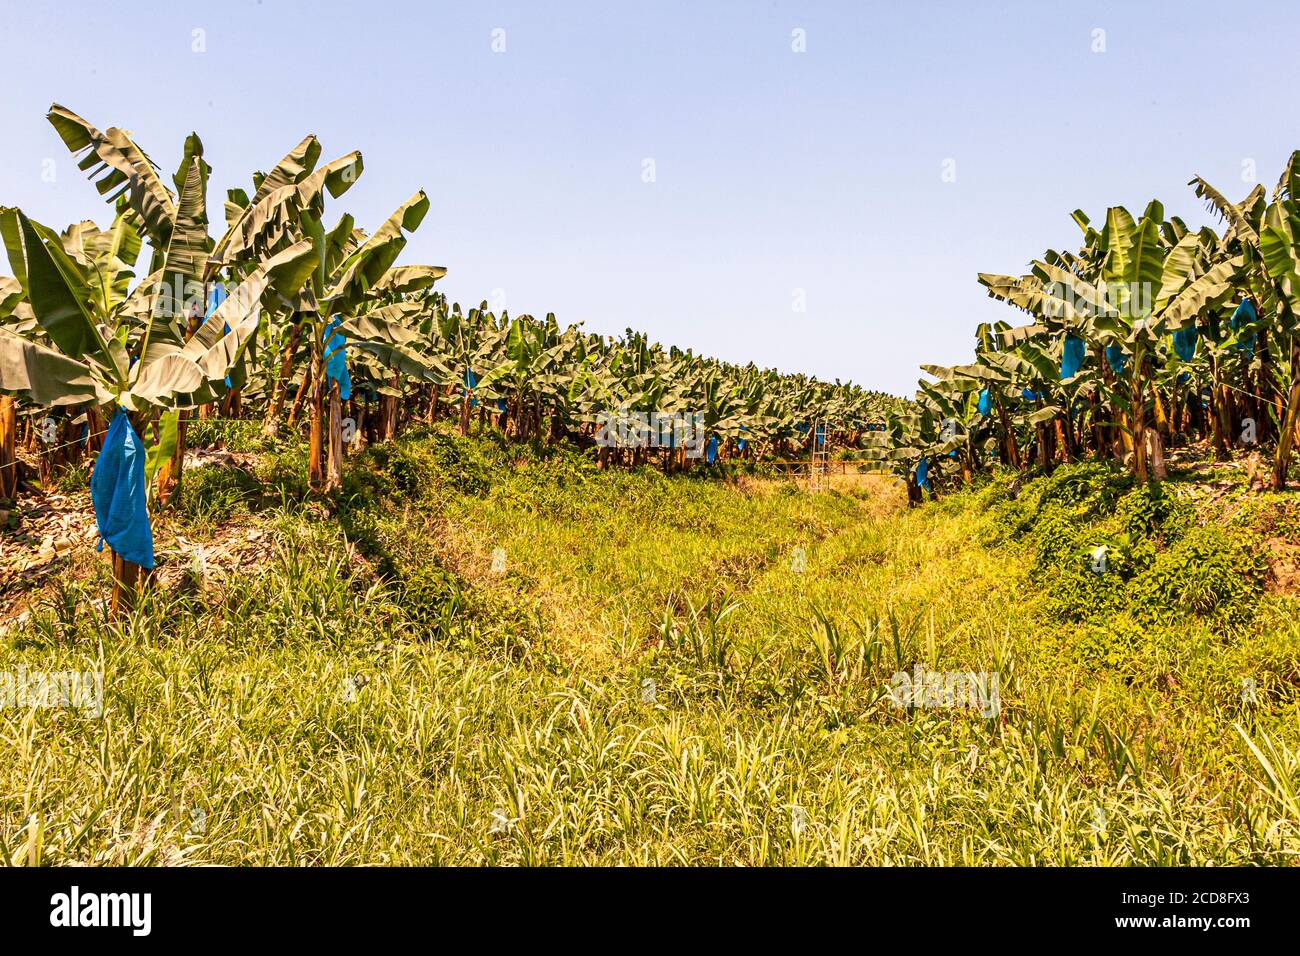 Banana plantation in Costa Rica Stock Photo